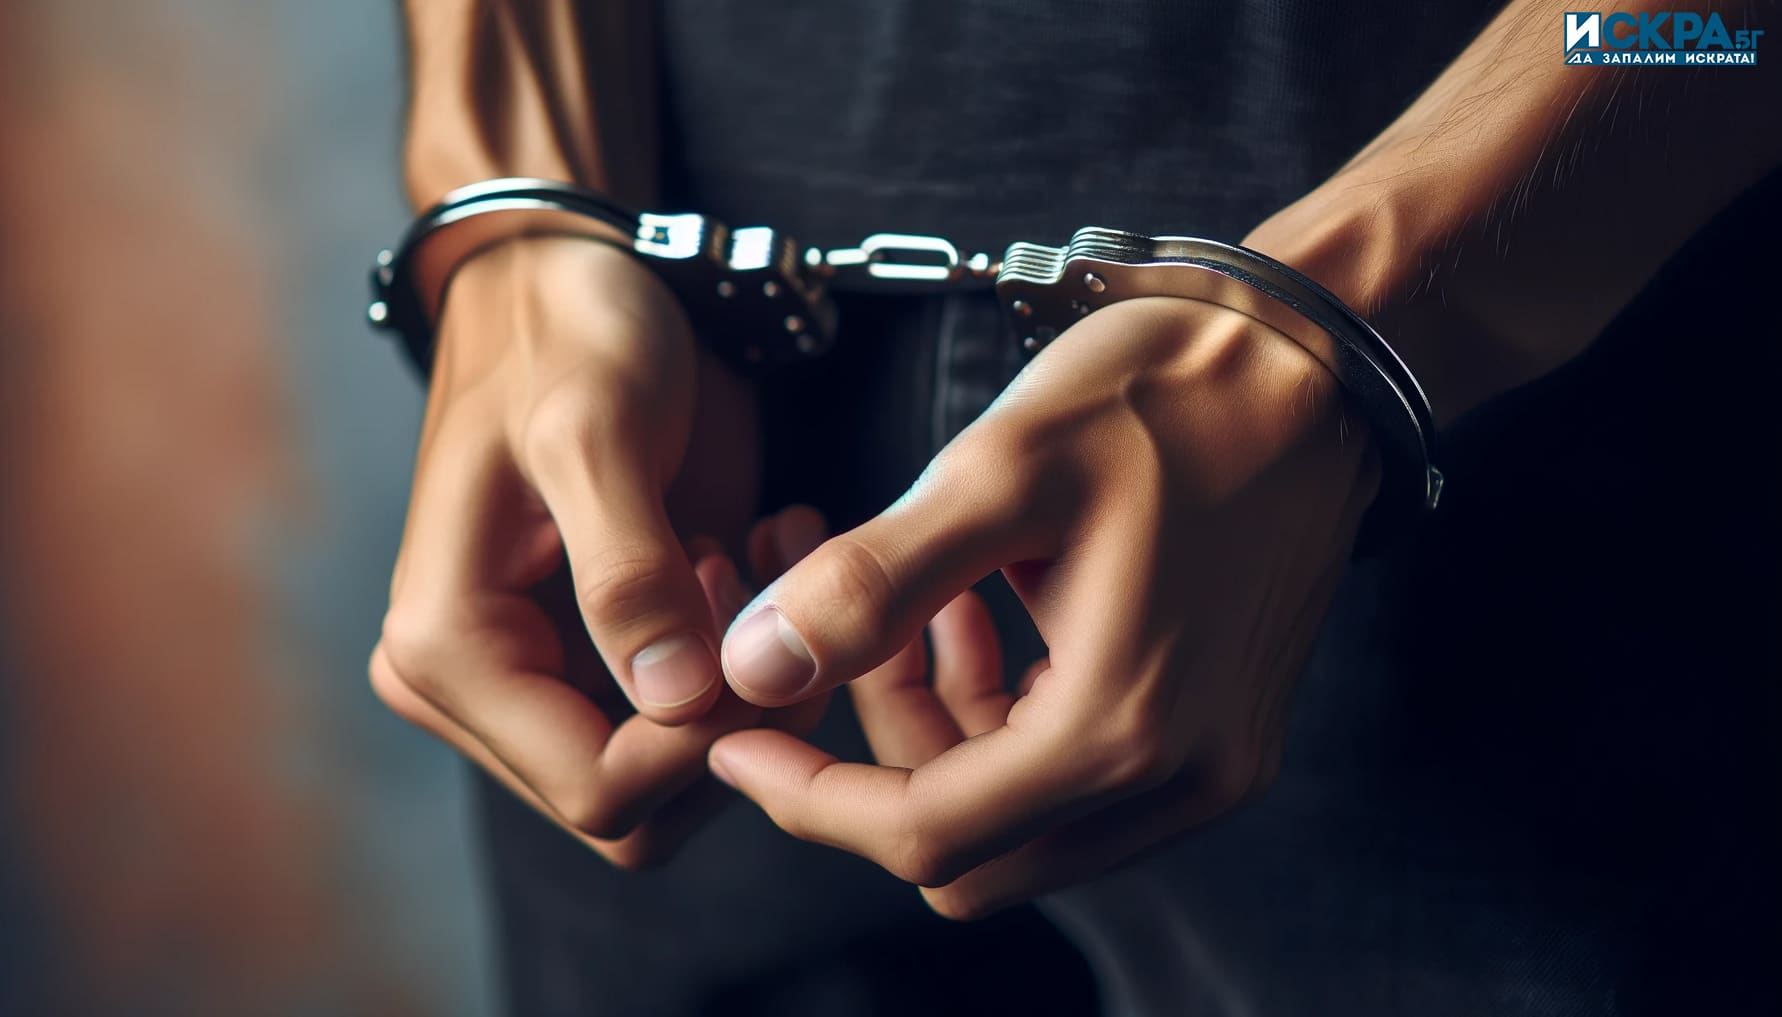 24-годишен криминално проявен и осъждан помориец с множество кражби зад